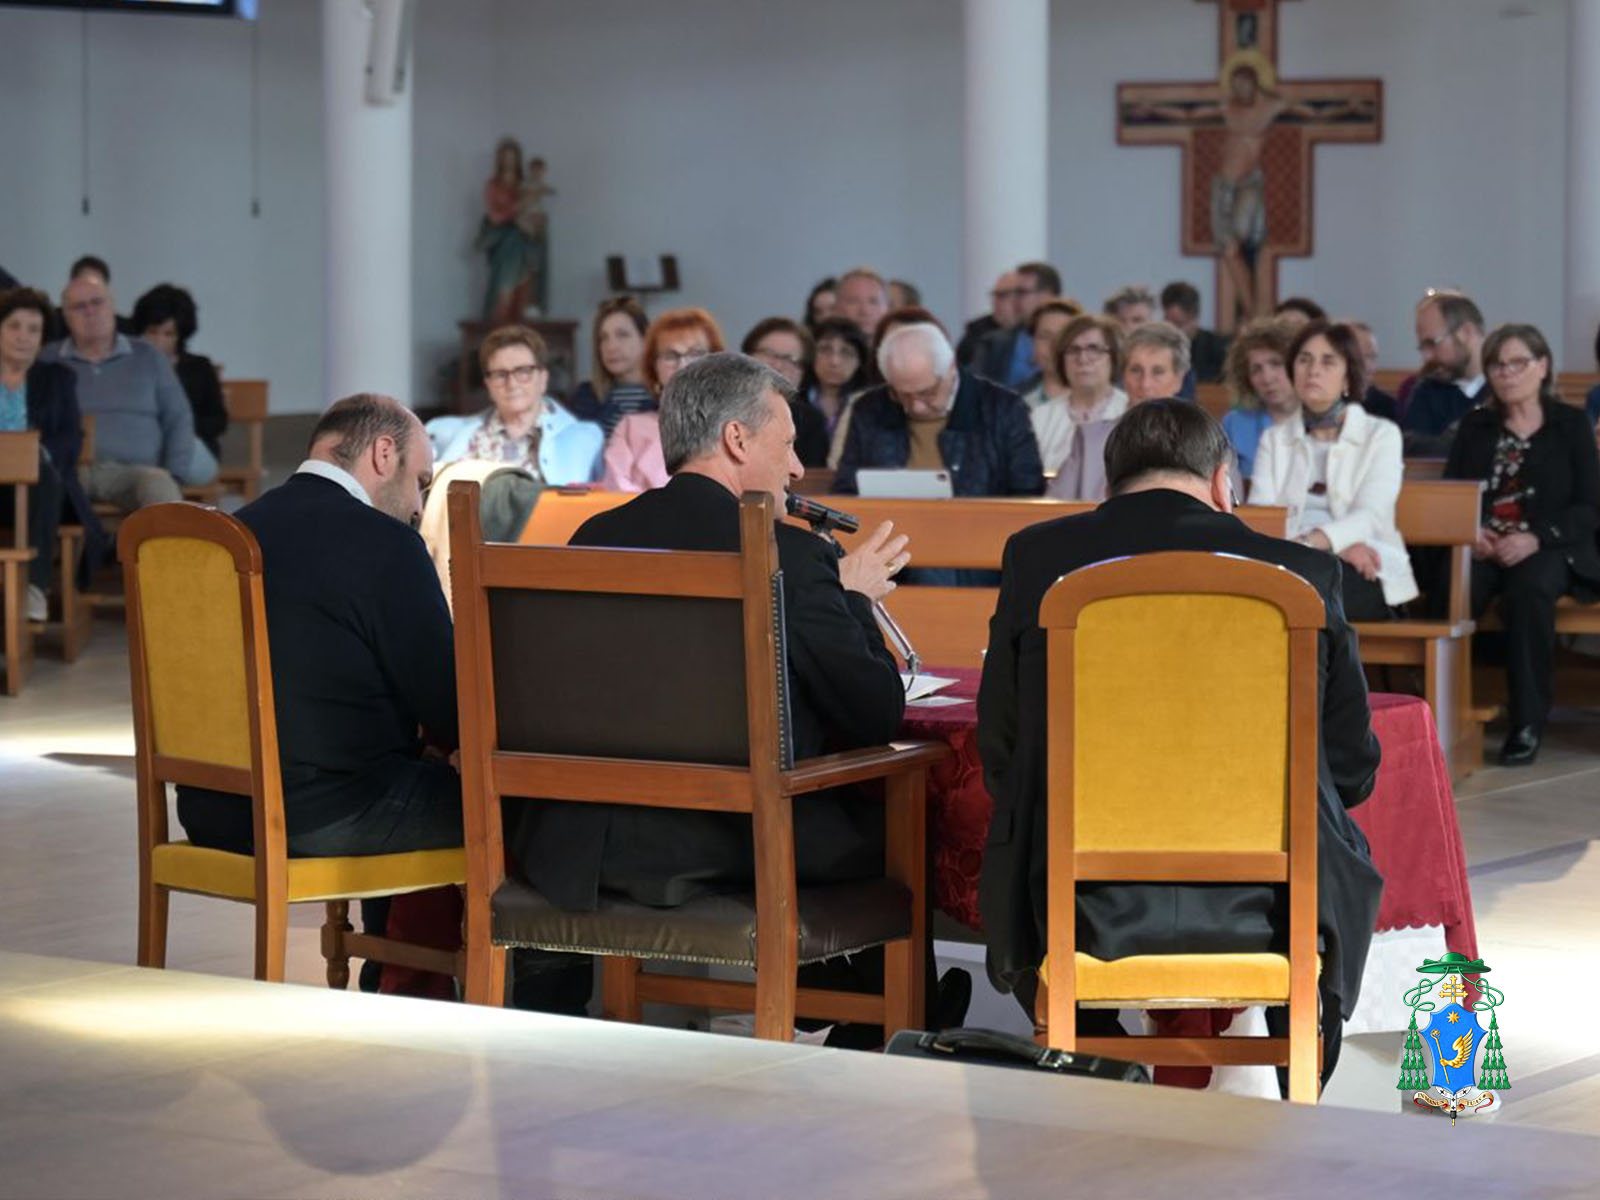 Anteprima dell'Assemblea Sinodale Diocesana del 13 aprile 2024 con la presenza del Cardinale Mario Grech